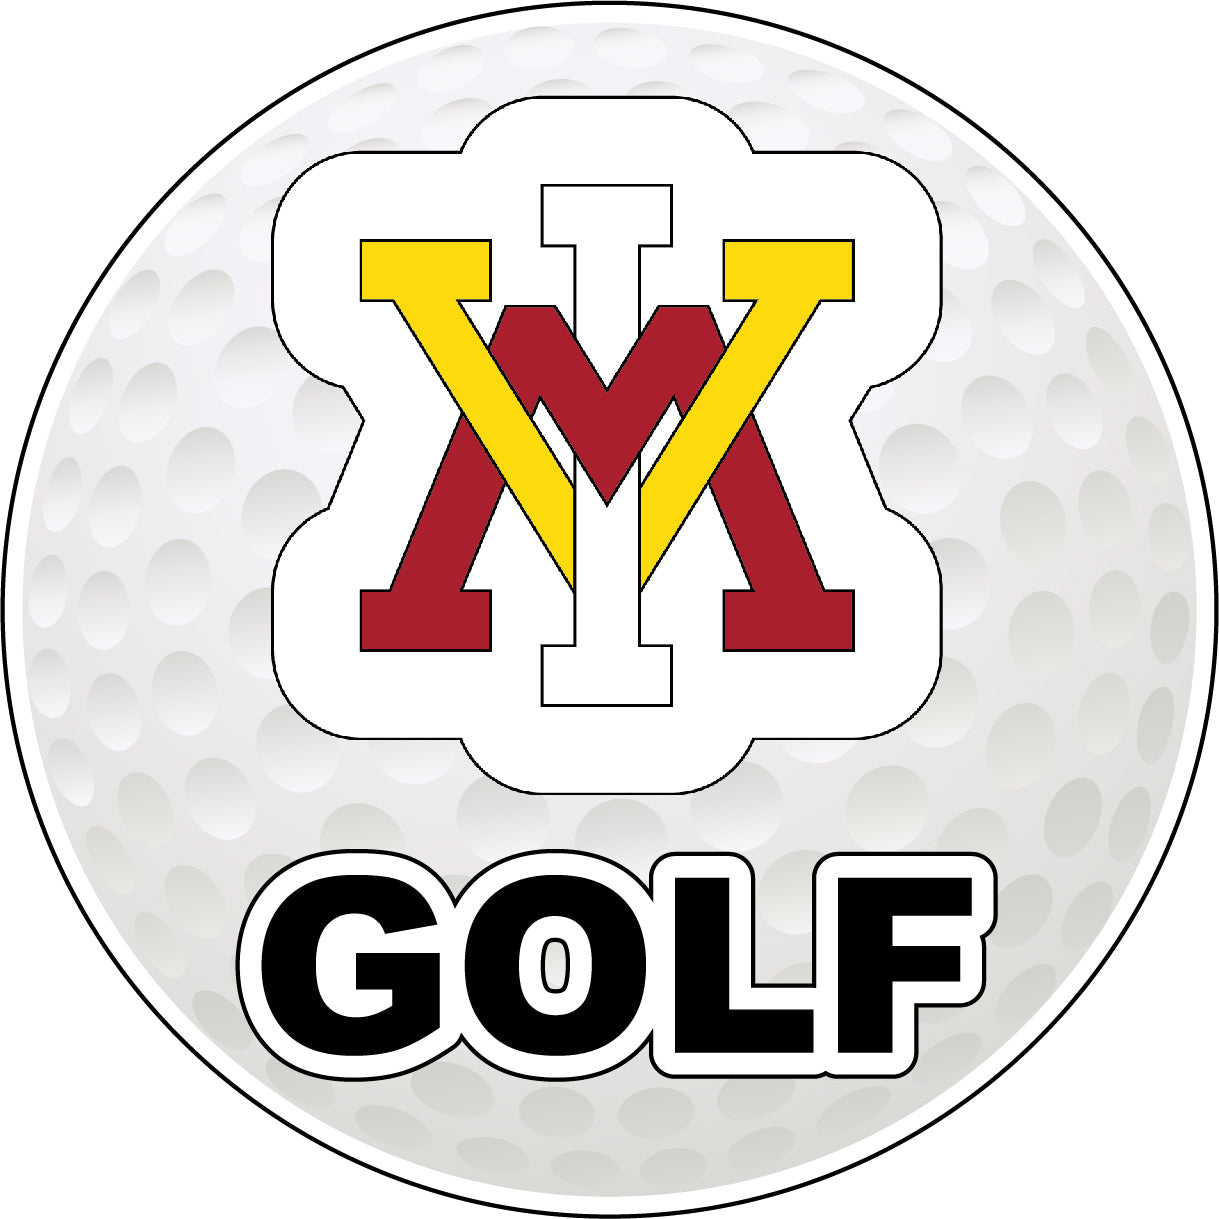 VMI Keydets 4-Inch Round Golf Ball Vinyl Decal Sticker